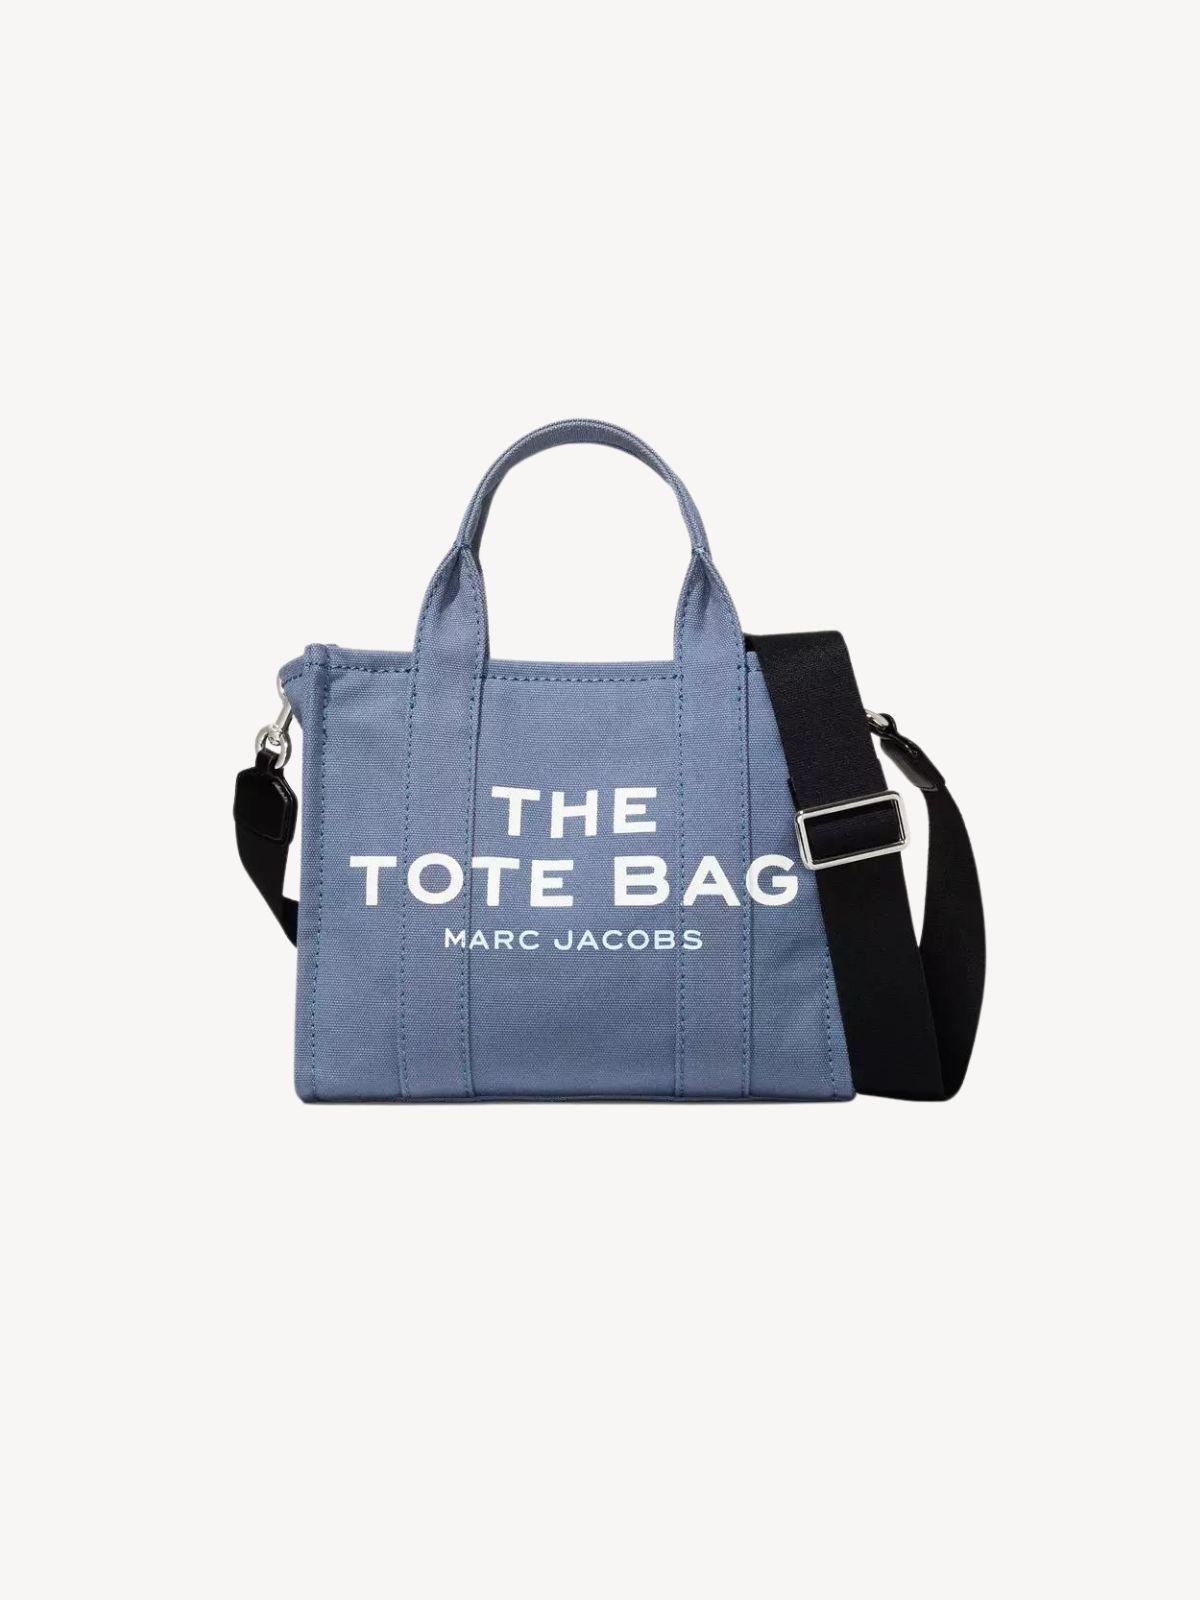 stemme Tether Observation Marc Jacobs The Mini Tote Bag i Canvas | Gundtoft.dk